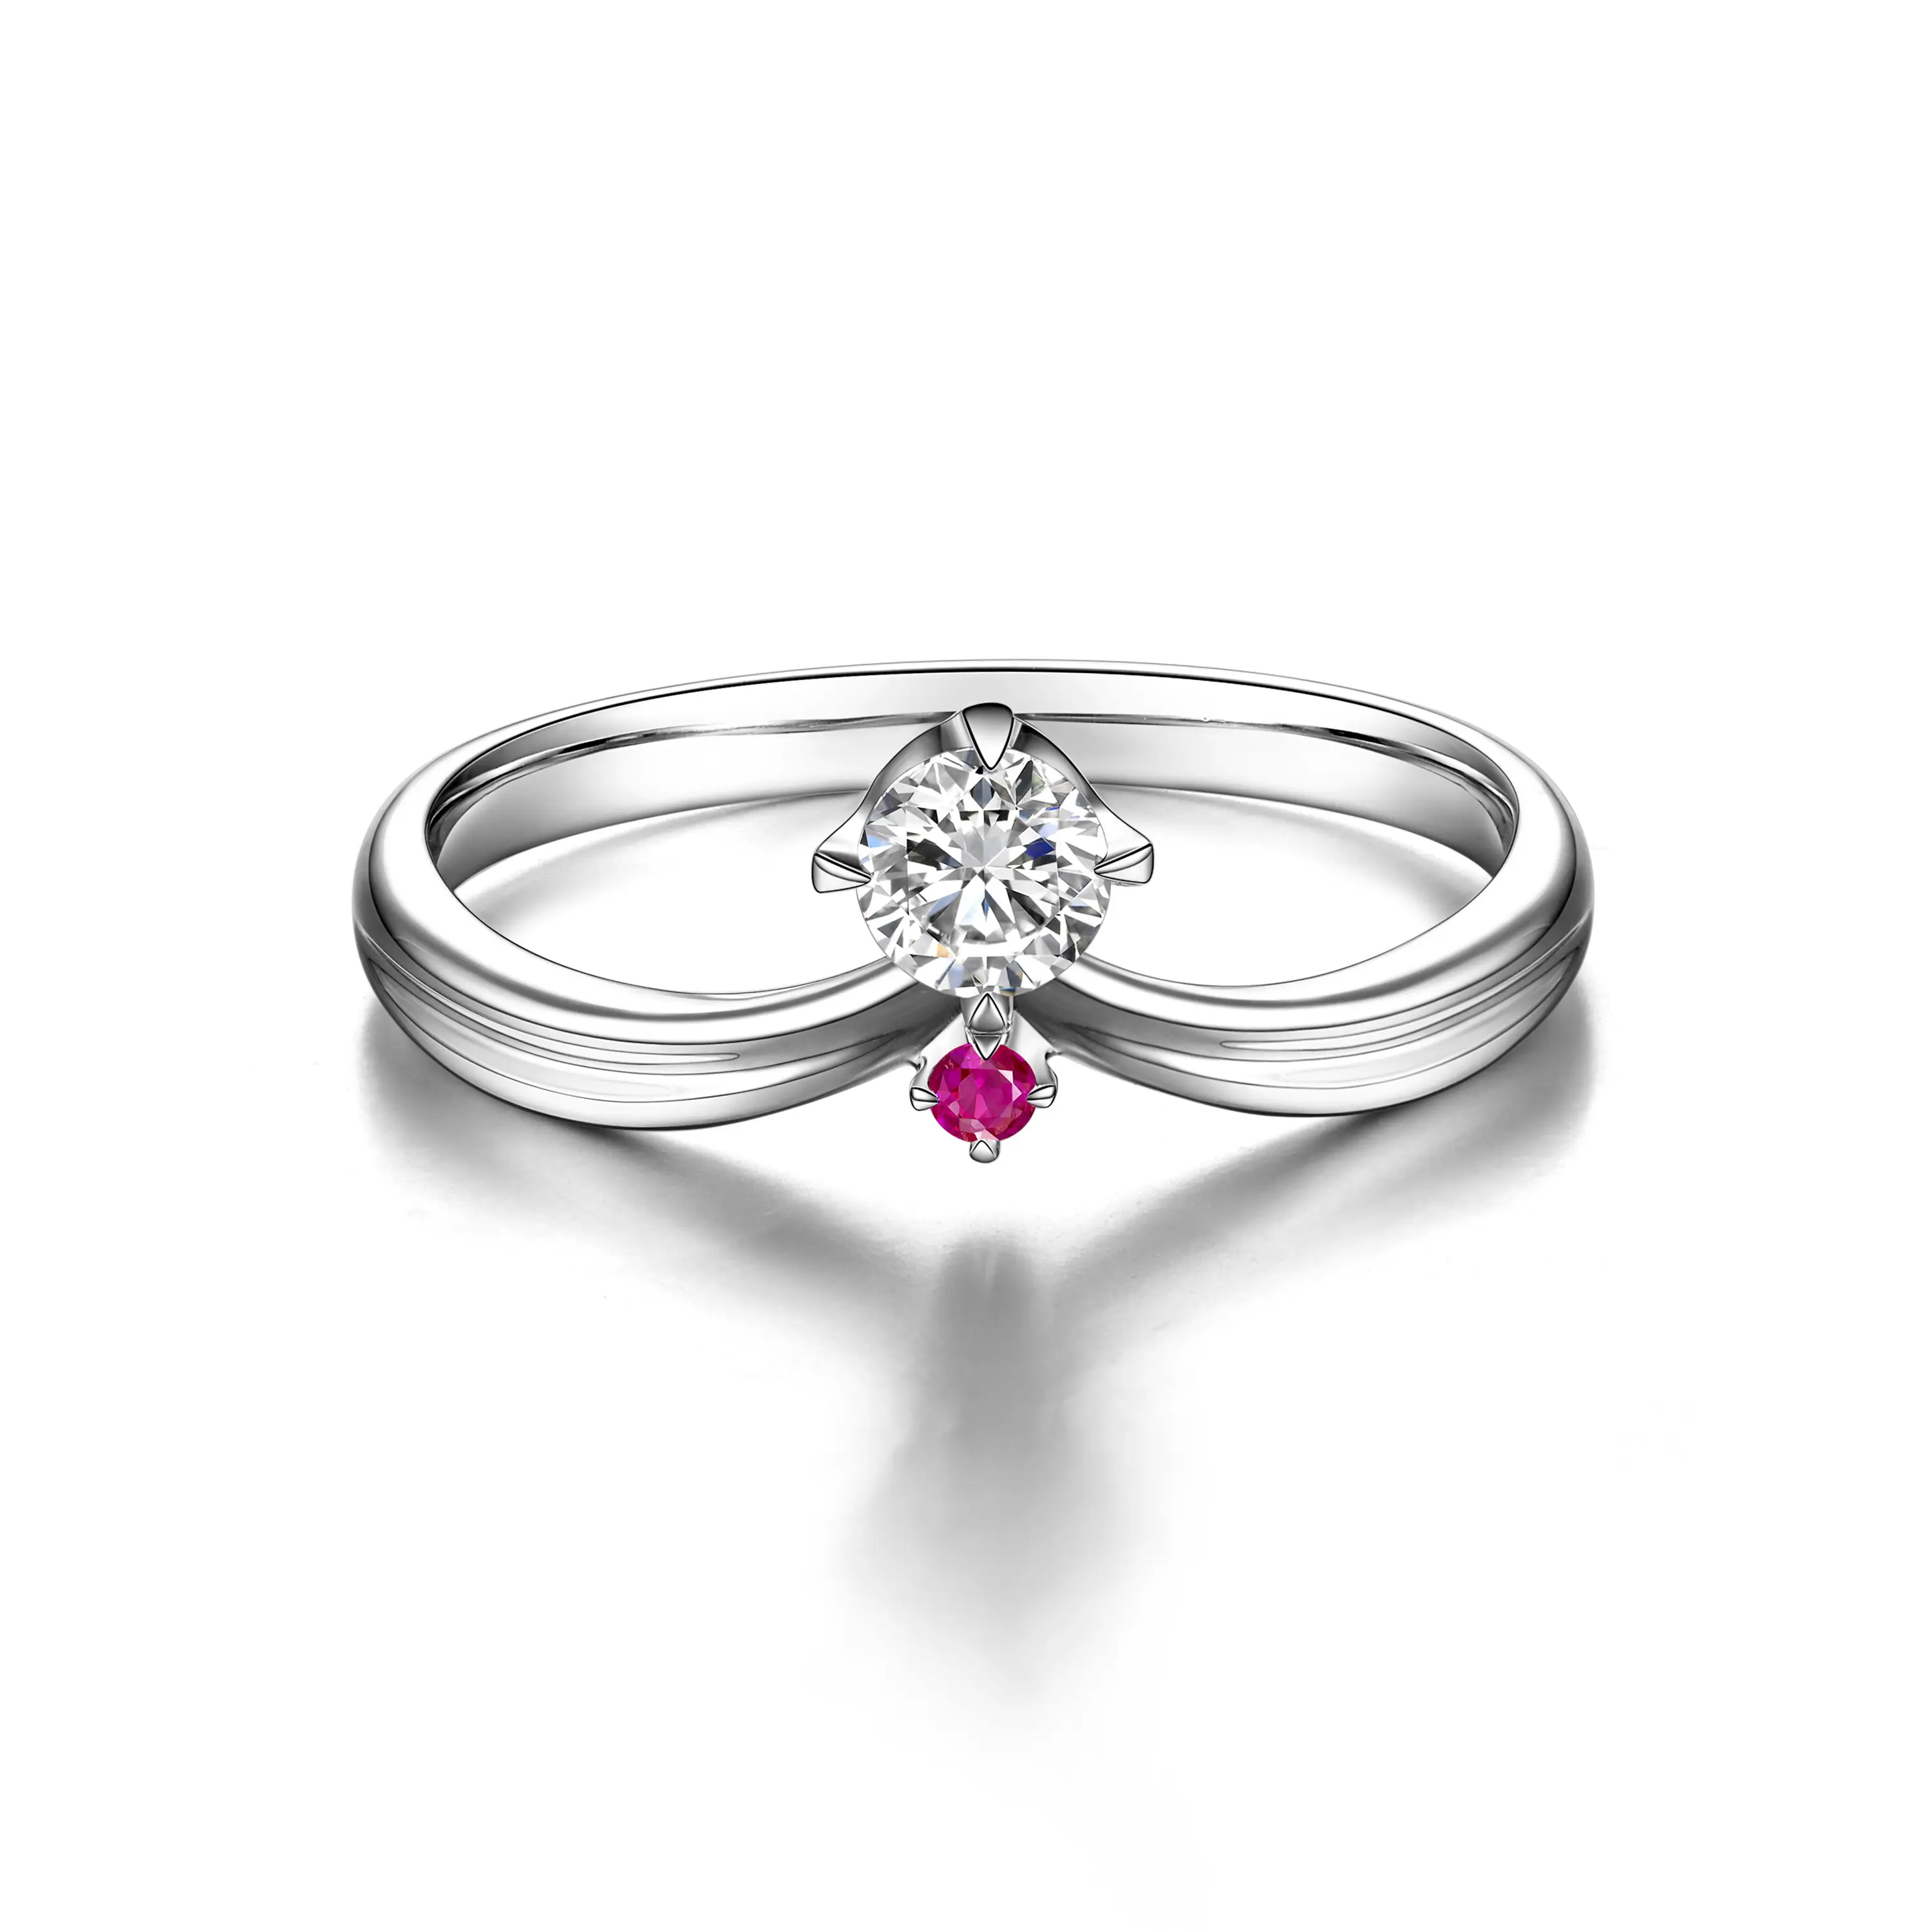 Jingzhanyi Fabbrica Dei Monili di Gioielli Fantasia di Disegno della pietra preziosa anello di 18K Oro Giallo del diamante e rubino Anello di San Valentino Per le donne